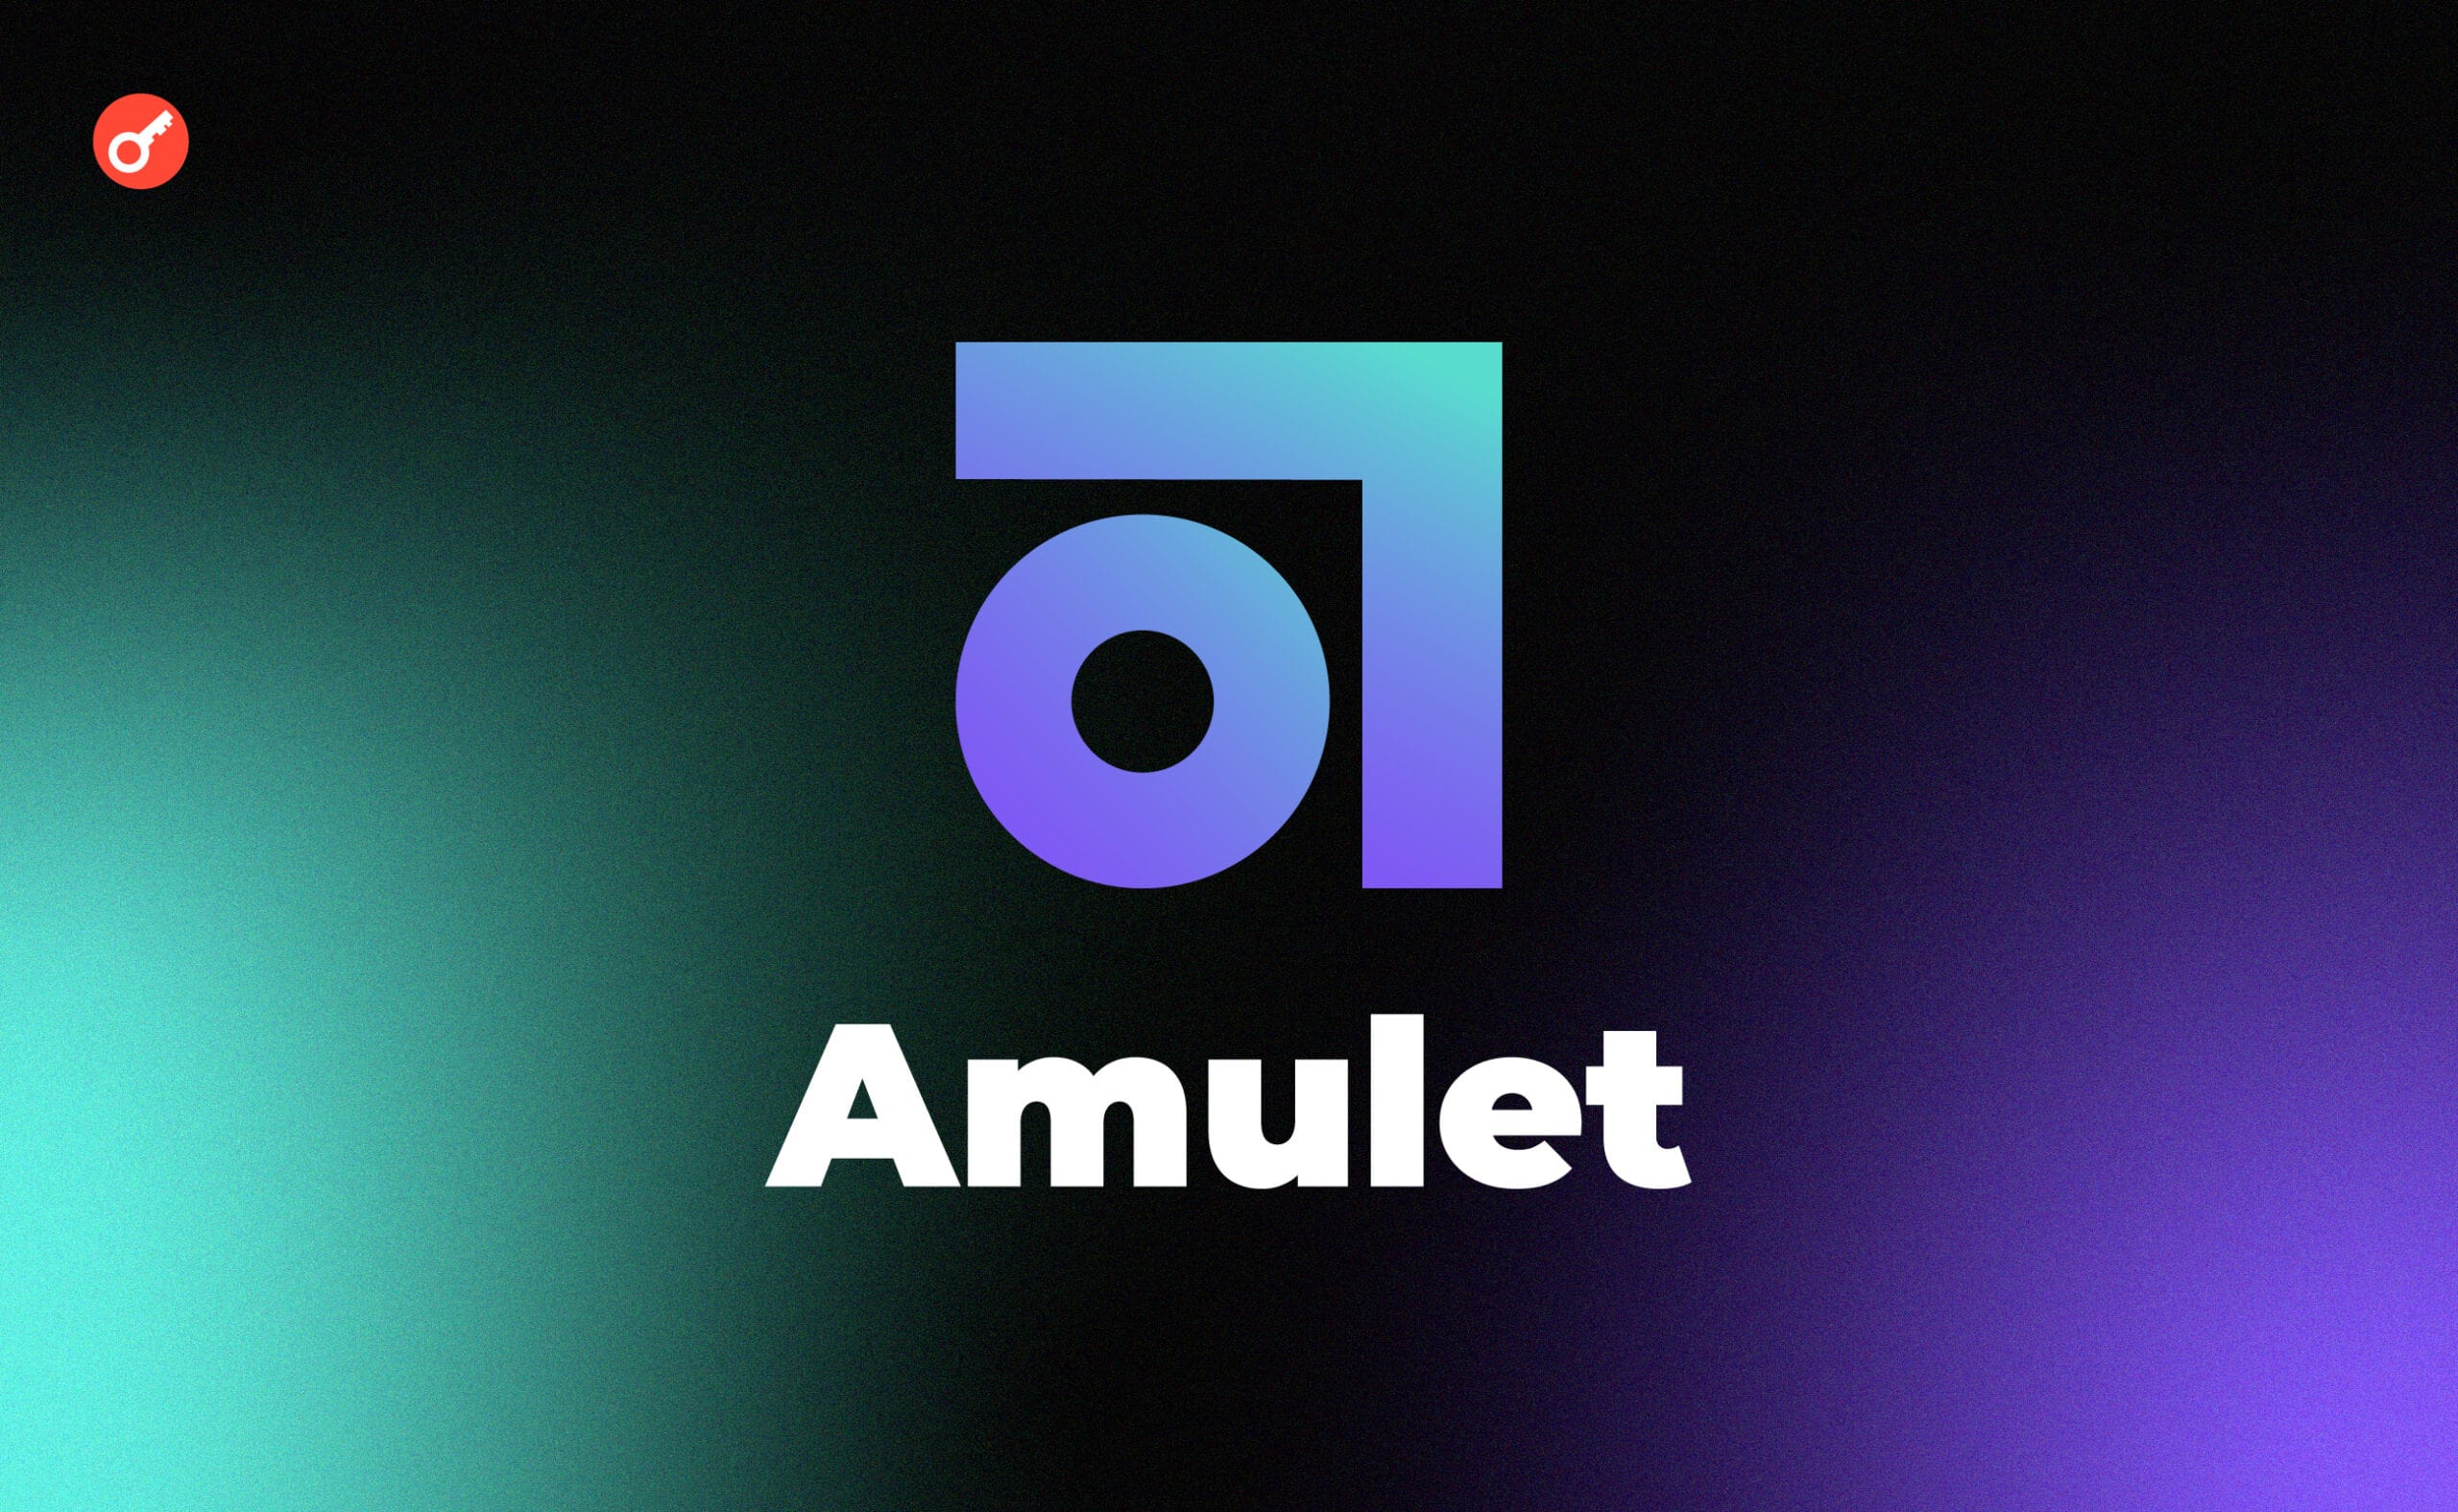 Amulet ambassador program: инструкция по получению амбассадорки. Заглавный коллаж статьи.